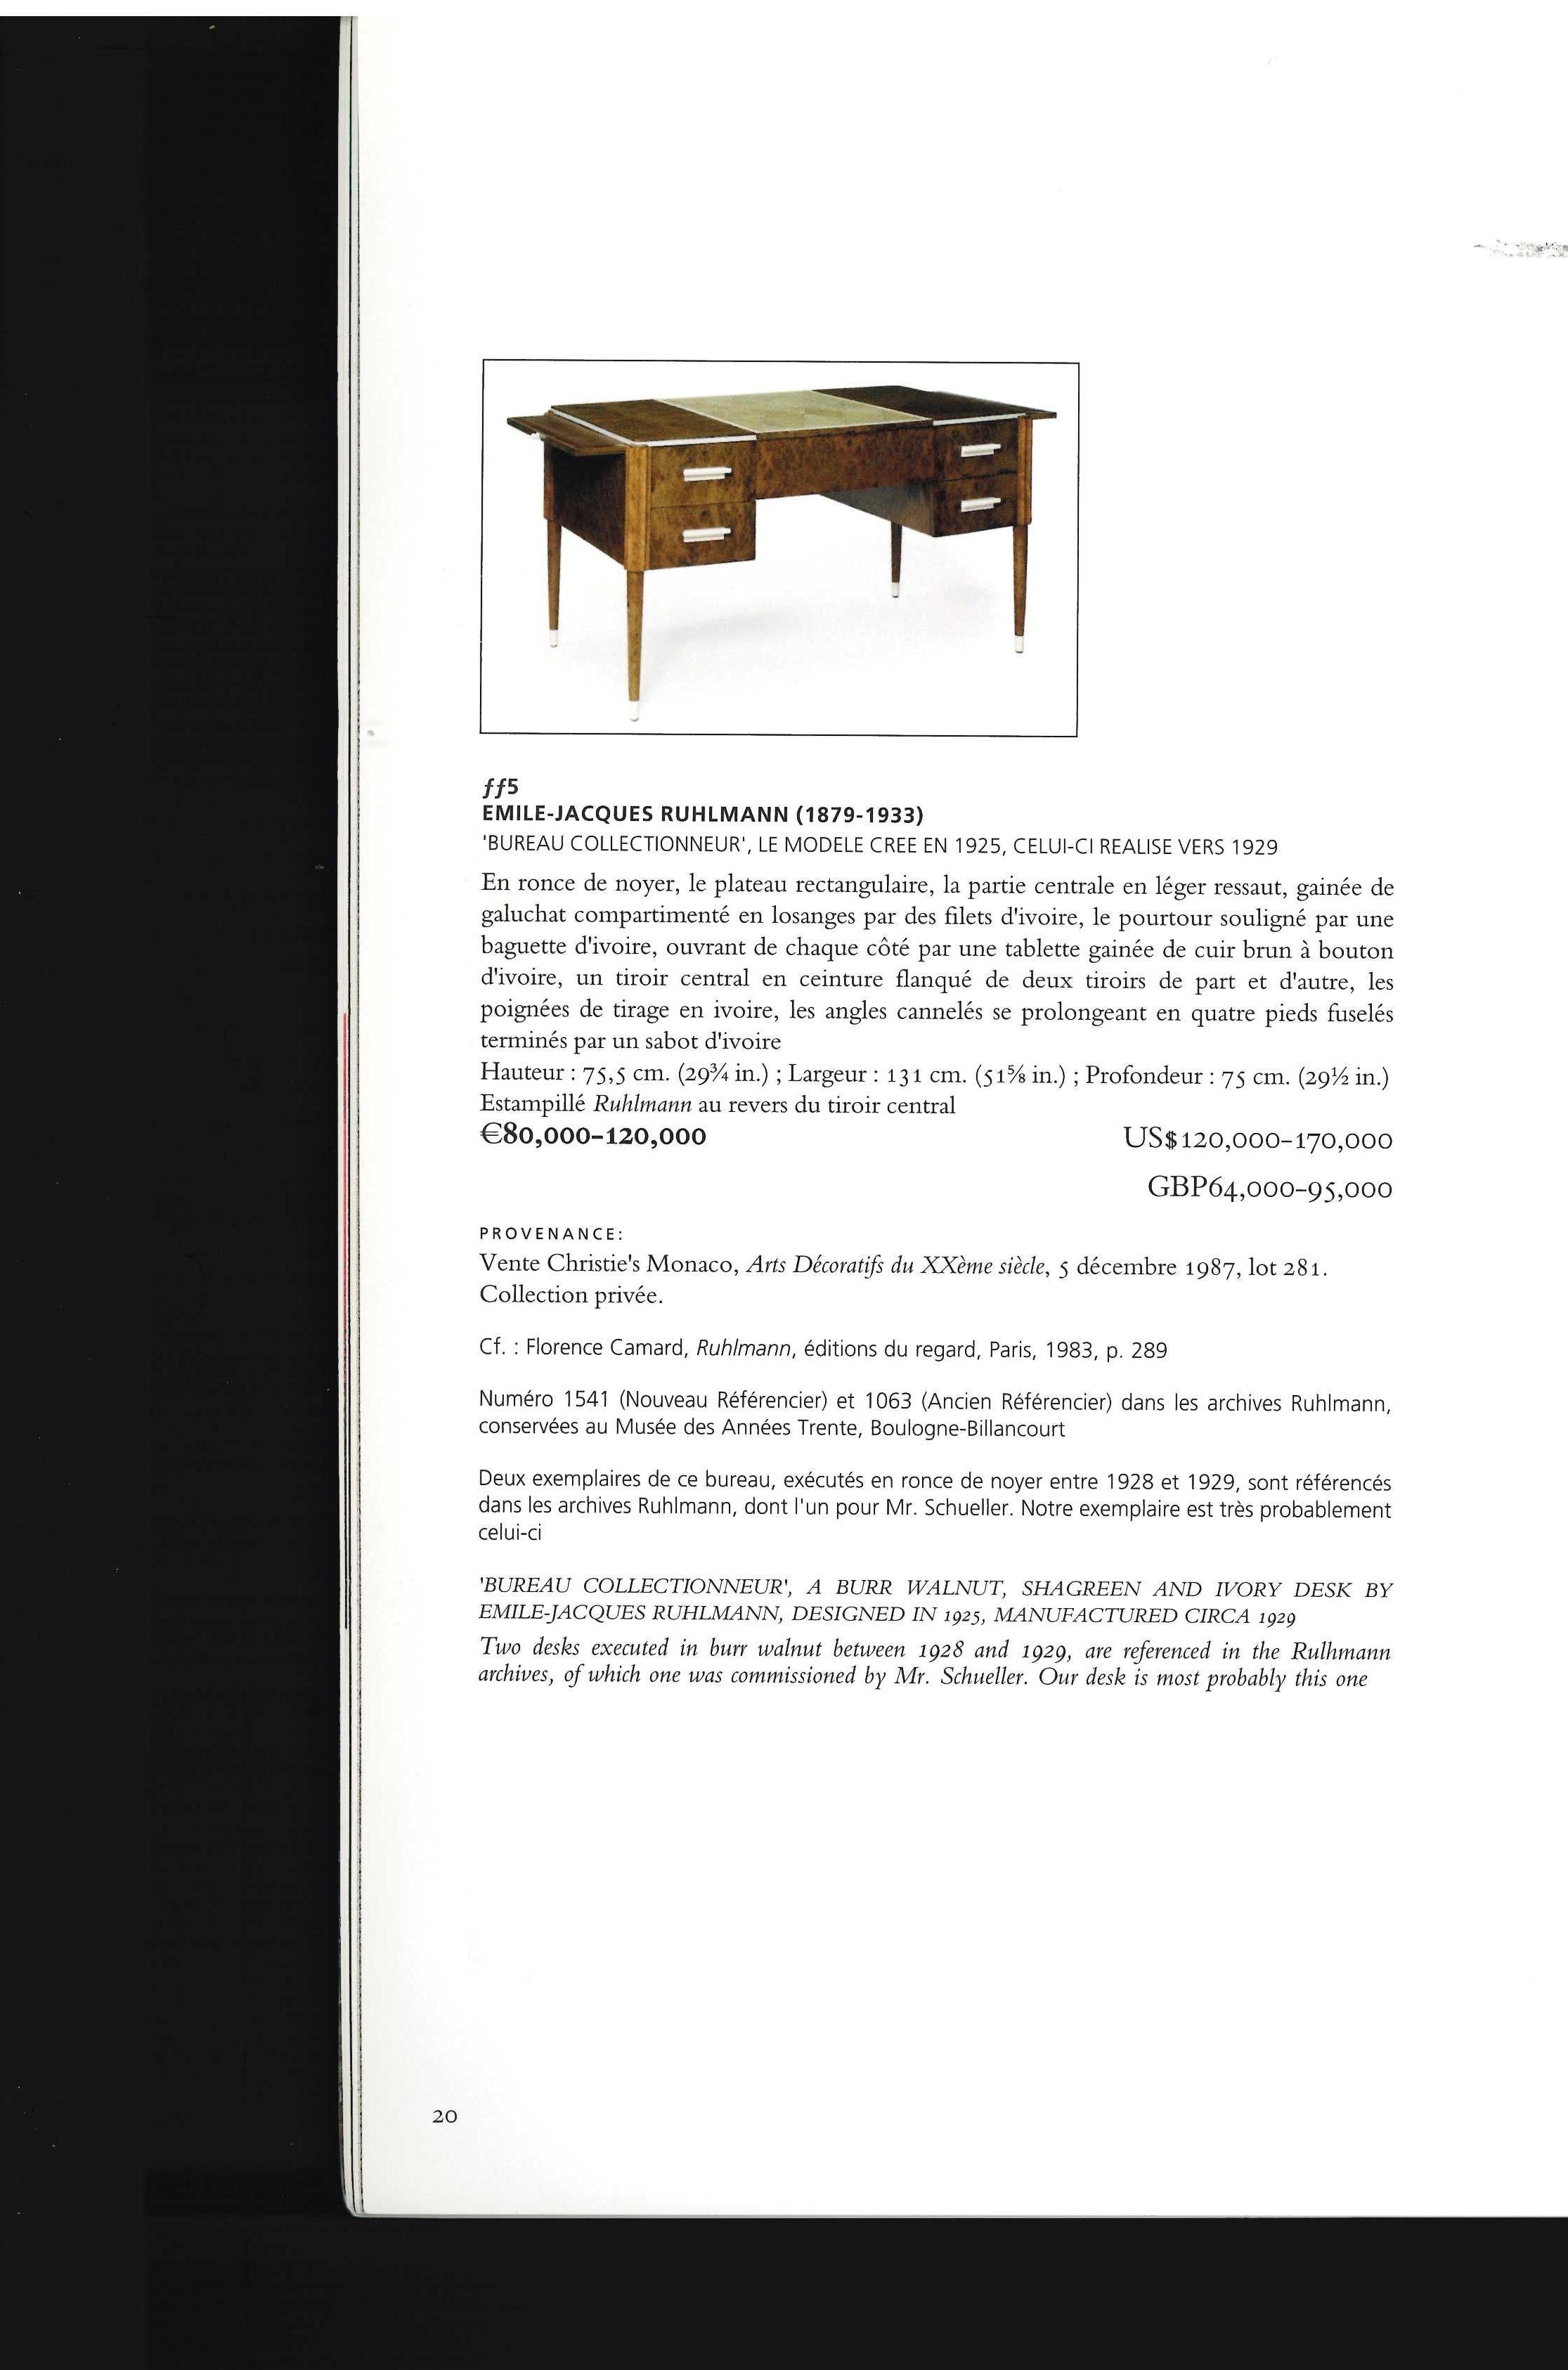 Arts Decoratifs Du Xxeme Siecle & Design (Book) For Sale 5